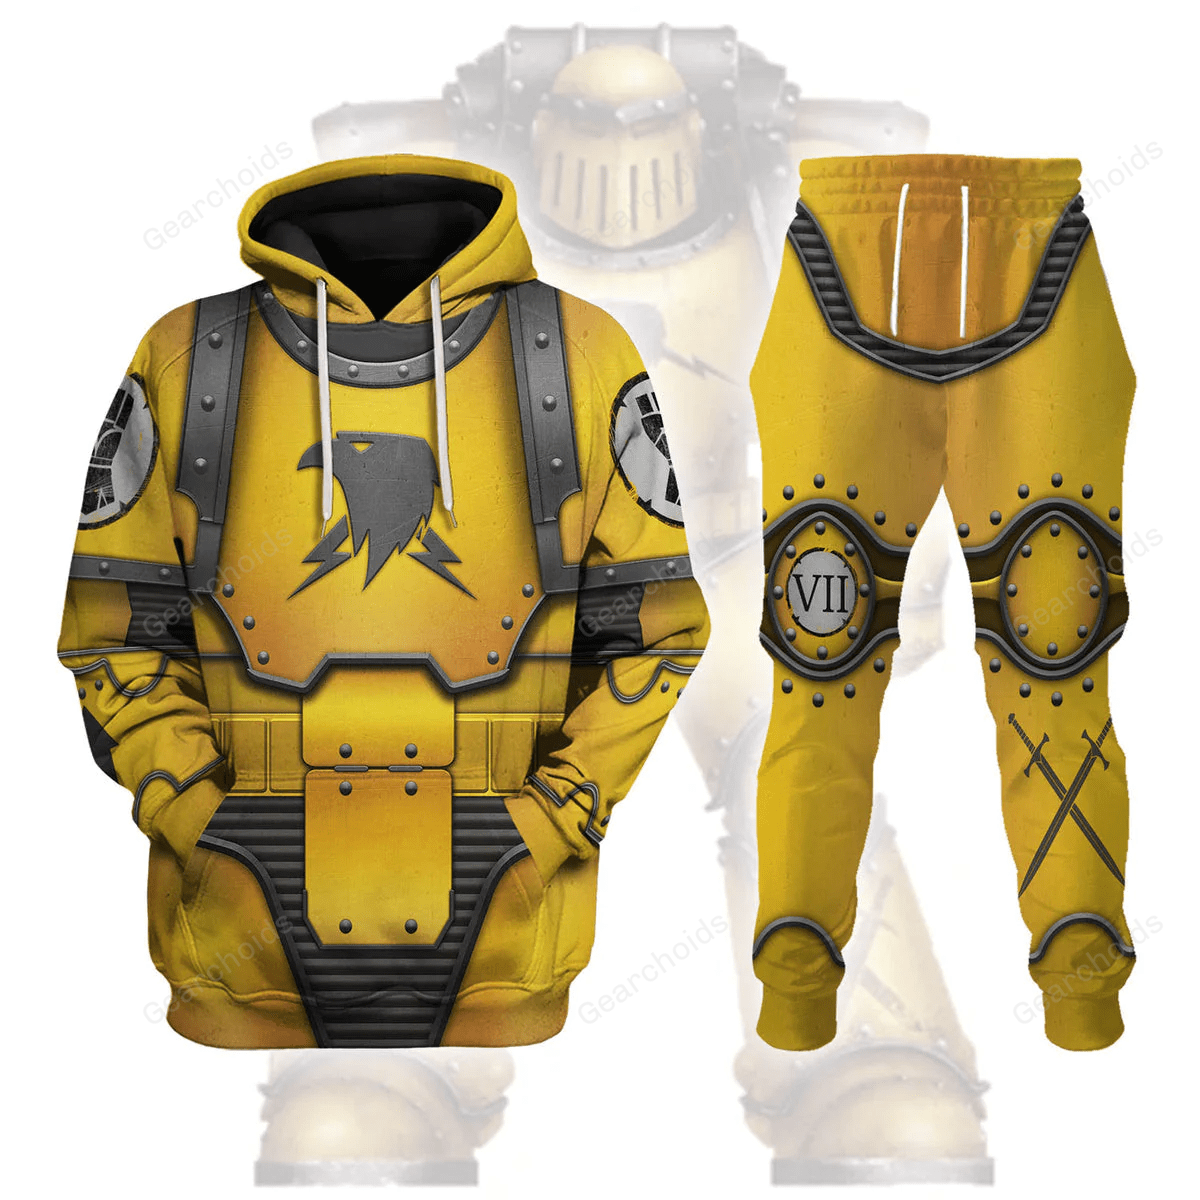 Imperial Fists in Mark III Power Armor - Costume Cosplay Hoodie Sweatshirt Sweatpants